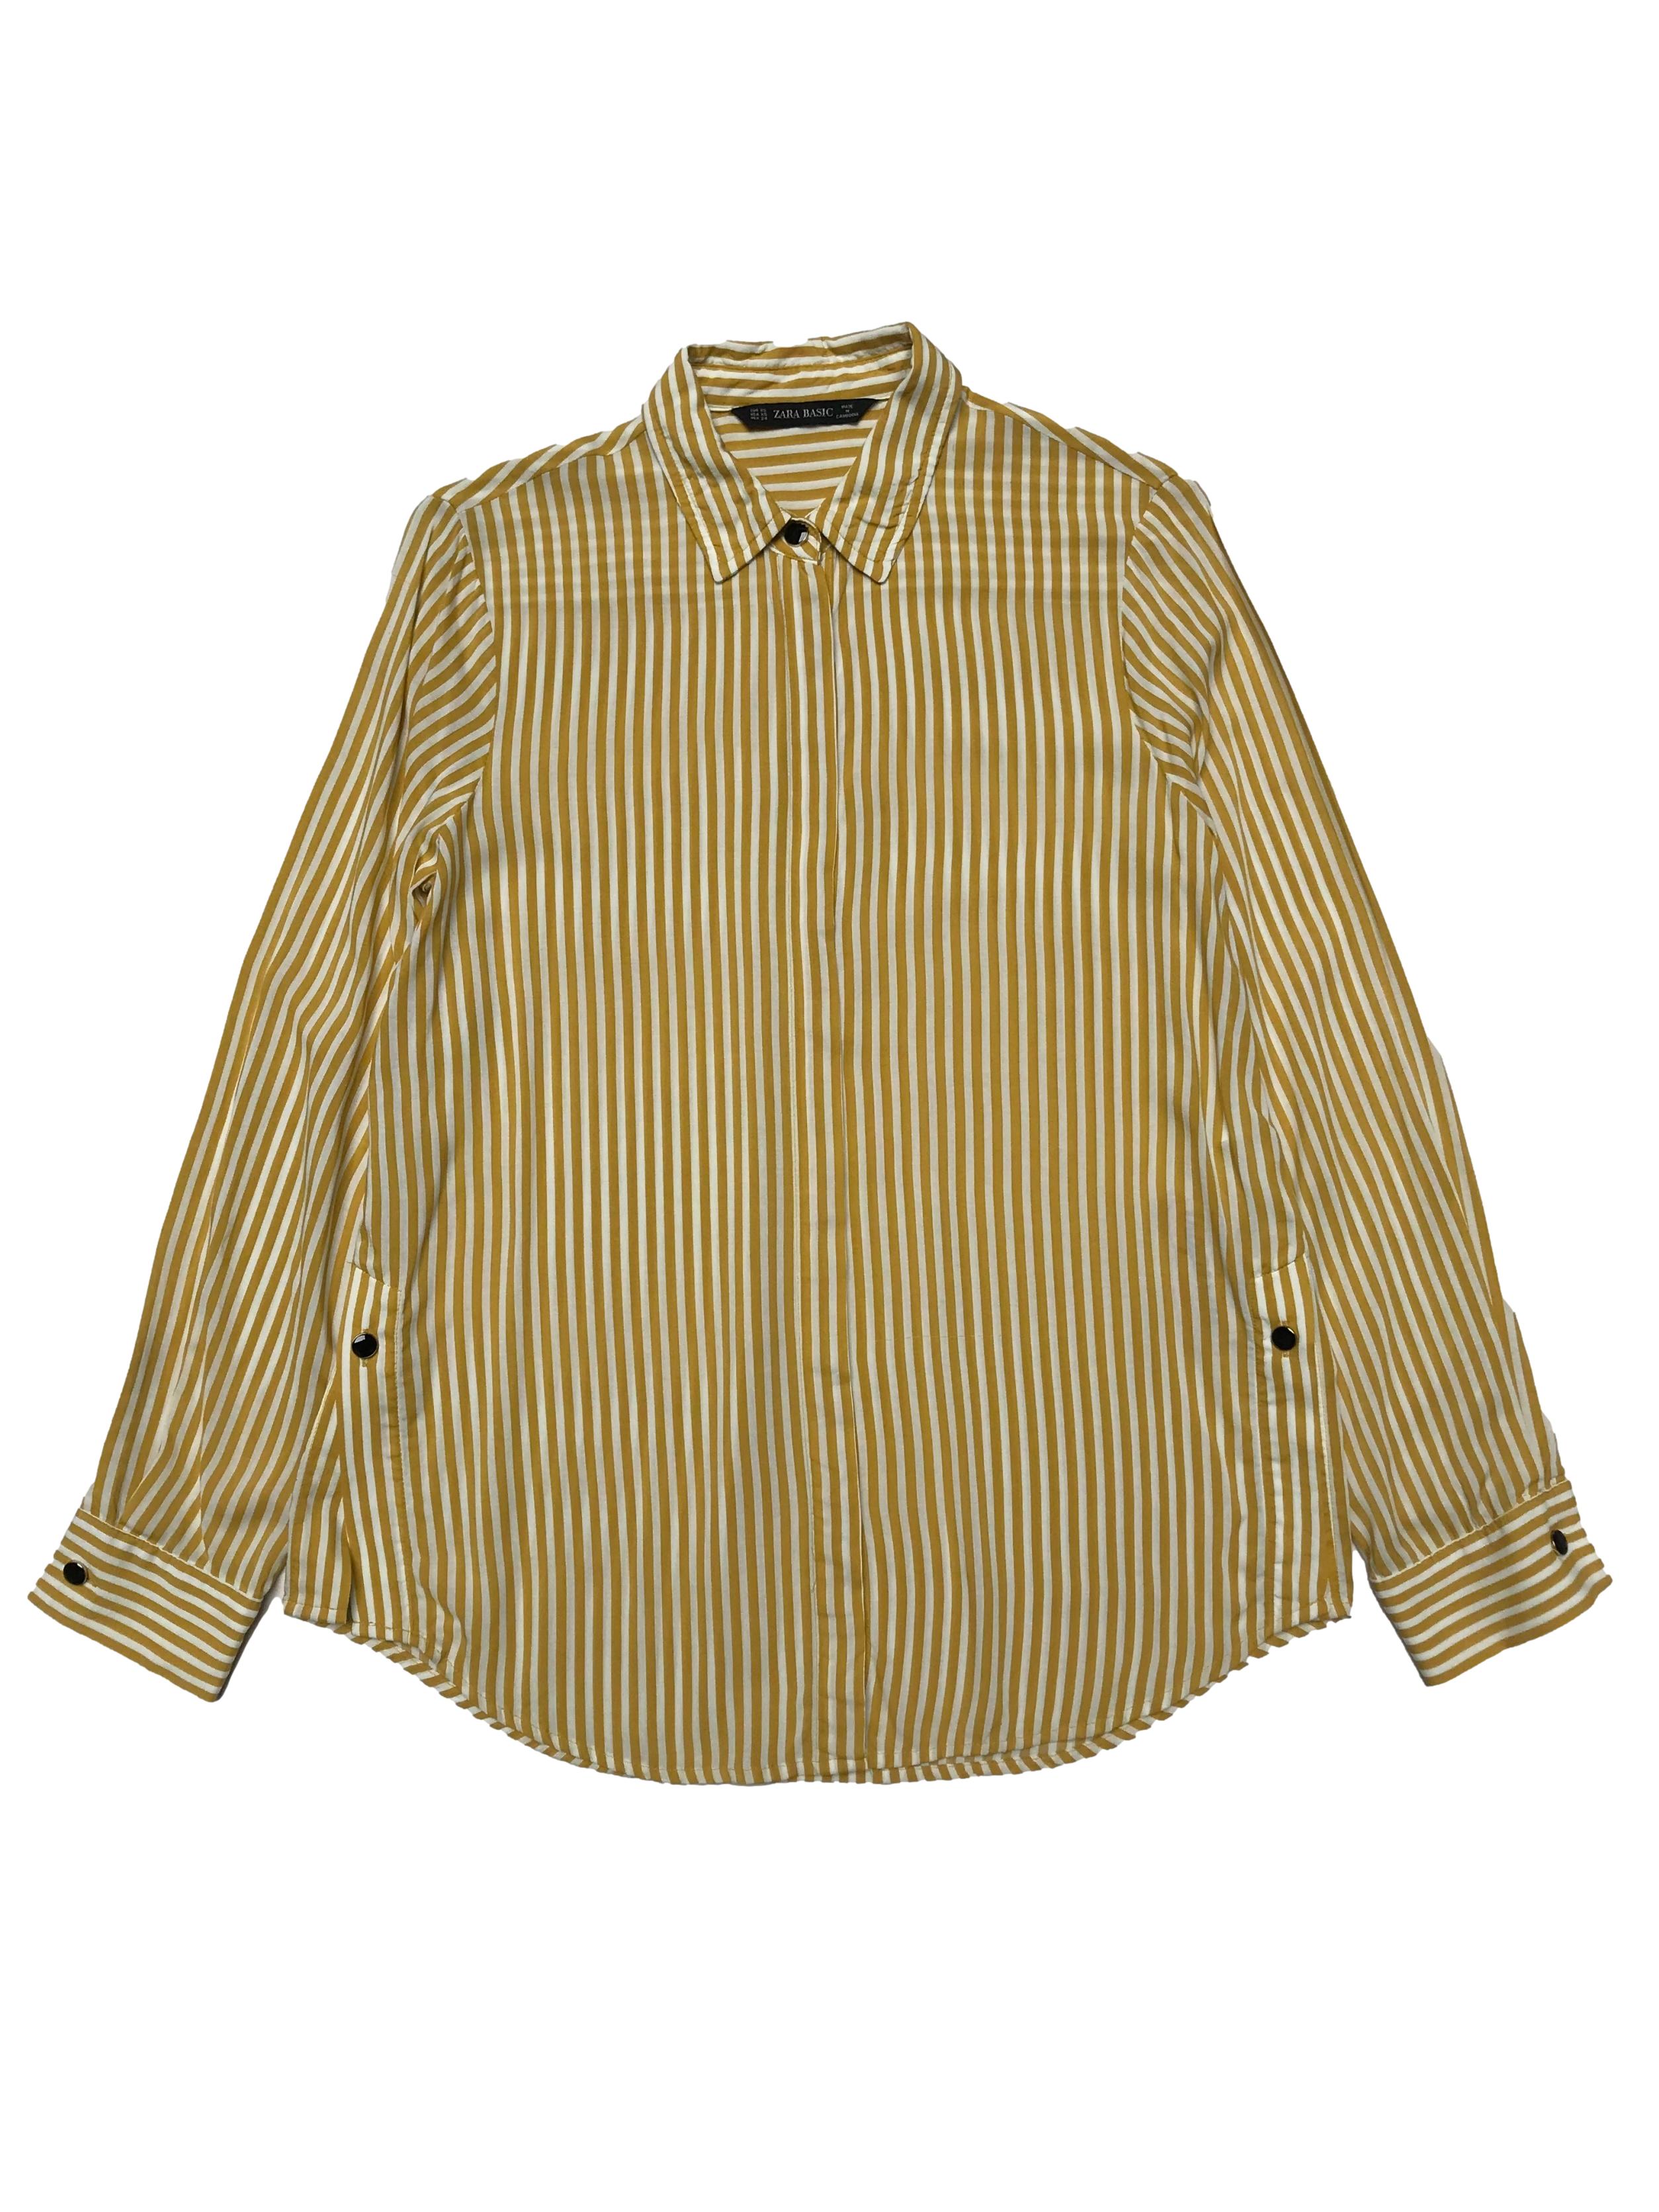 Blusa Zara a rayas blancas amarillas, metálicos en delantero, y aberturas laterales, tela viscosa fresca. Busto 96cm Largo 57-66cm | Traperas